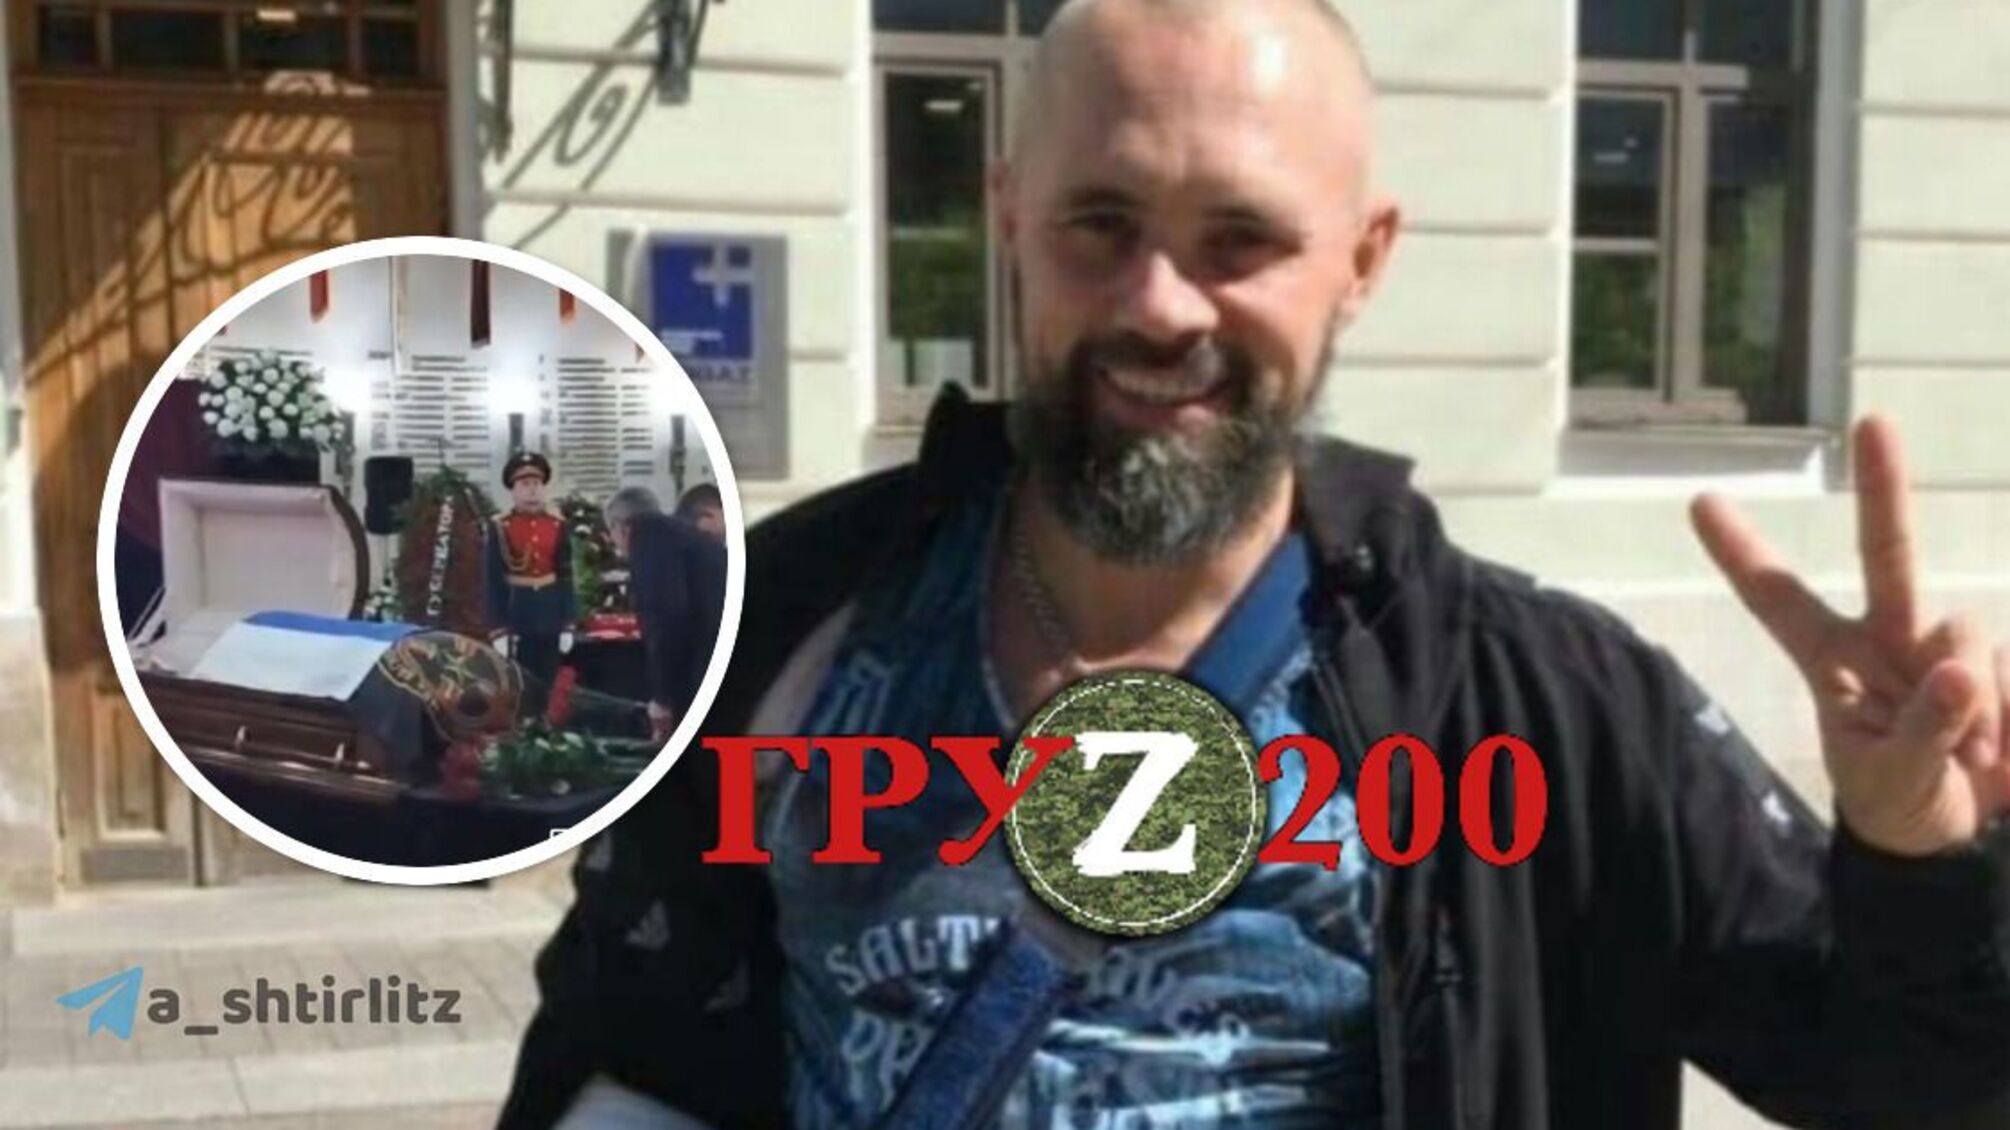 Нагин 'Черкес' (или 'Терек'), штурмовик из ПВК 'Вагнер', погиб в Украине: Пригожин был на похоронах